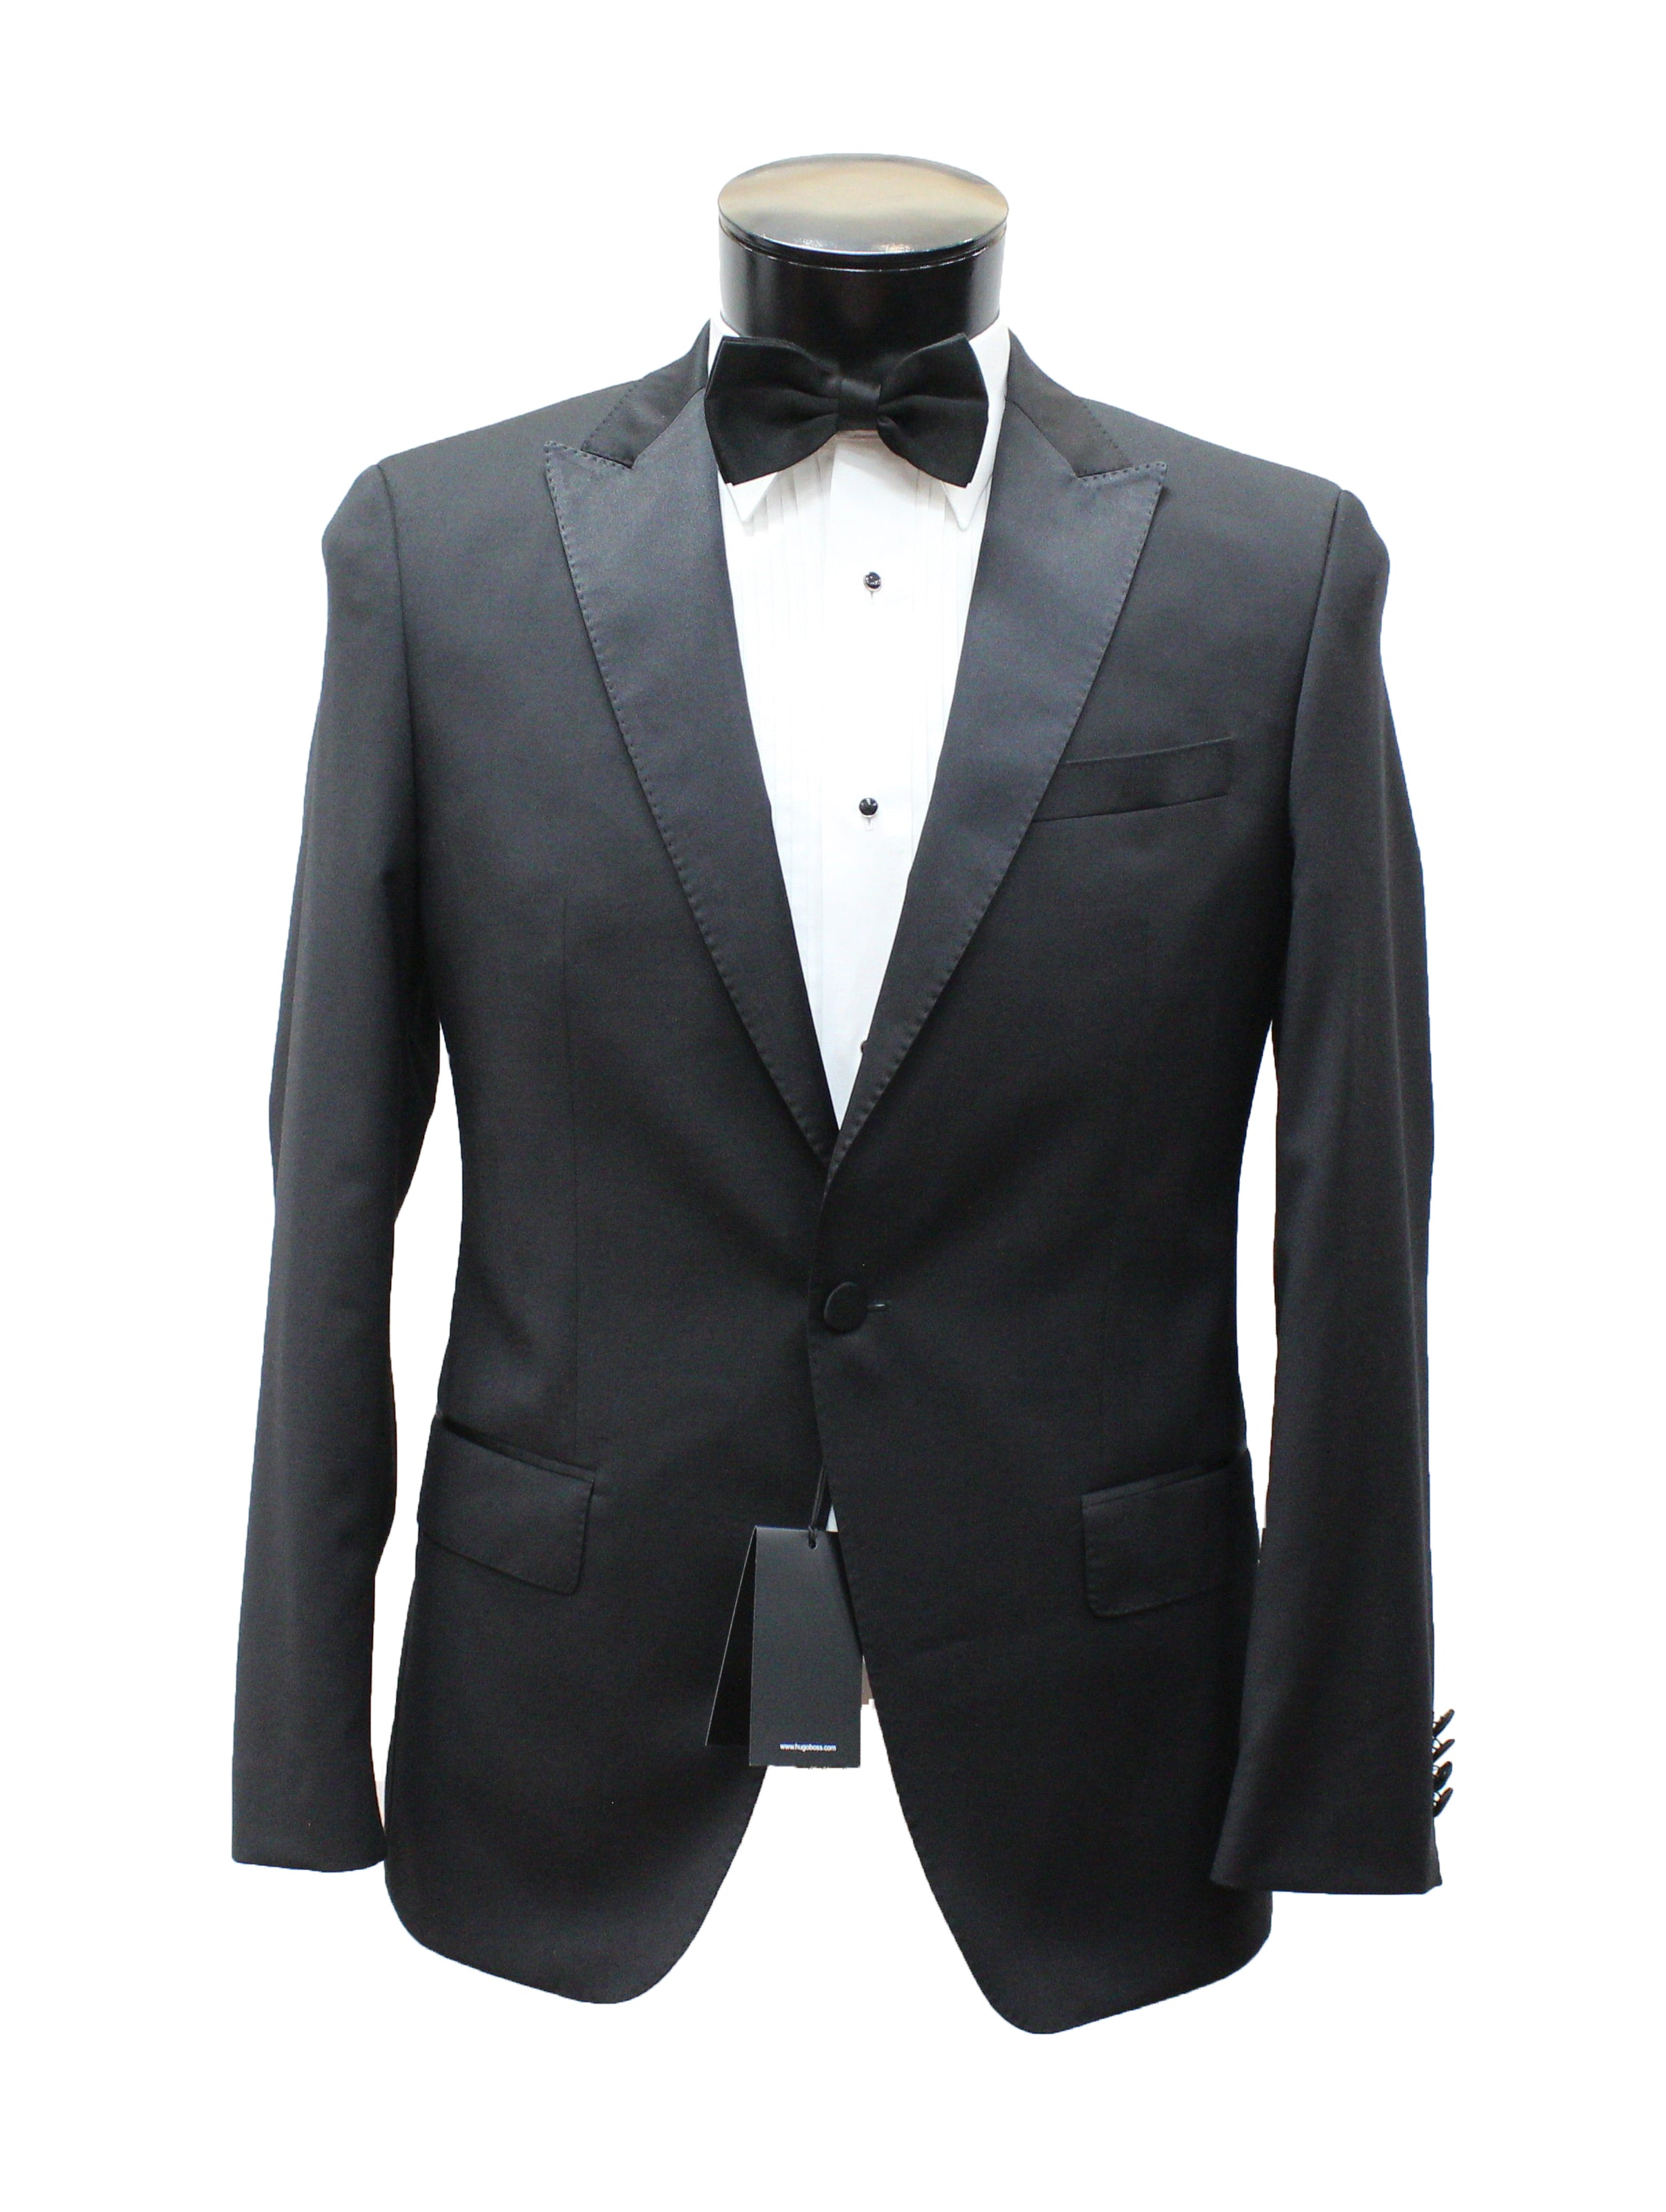 Hugo Boss Housten Glorious Tuxedo – Elite Tuxedo / Elite Apparel Source